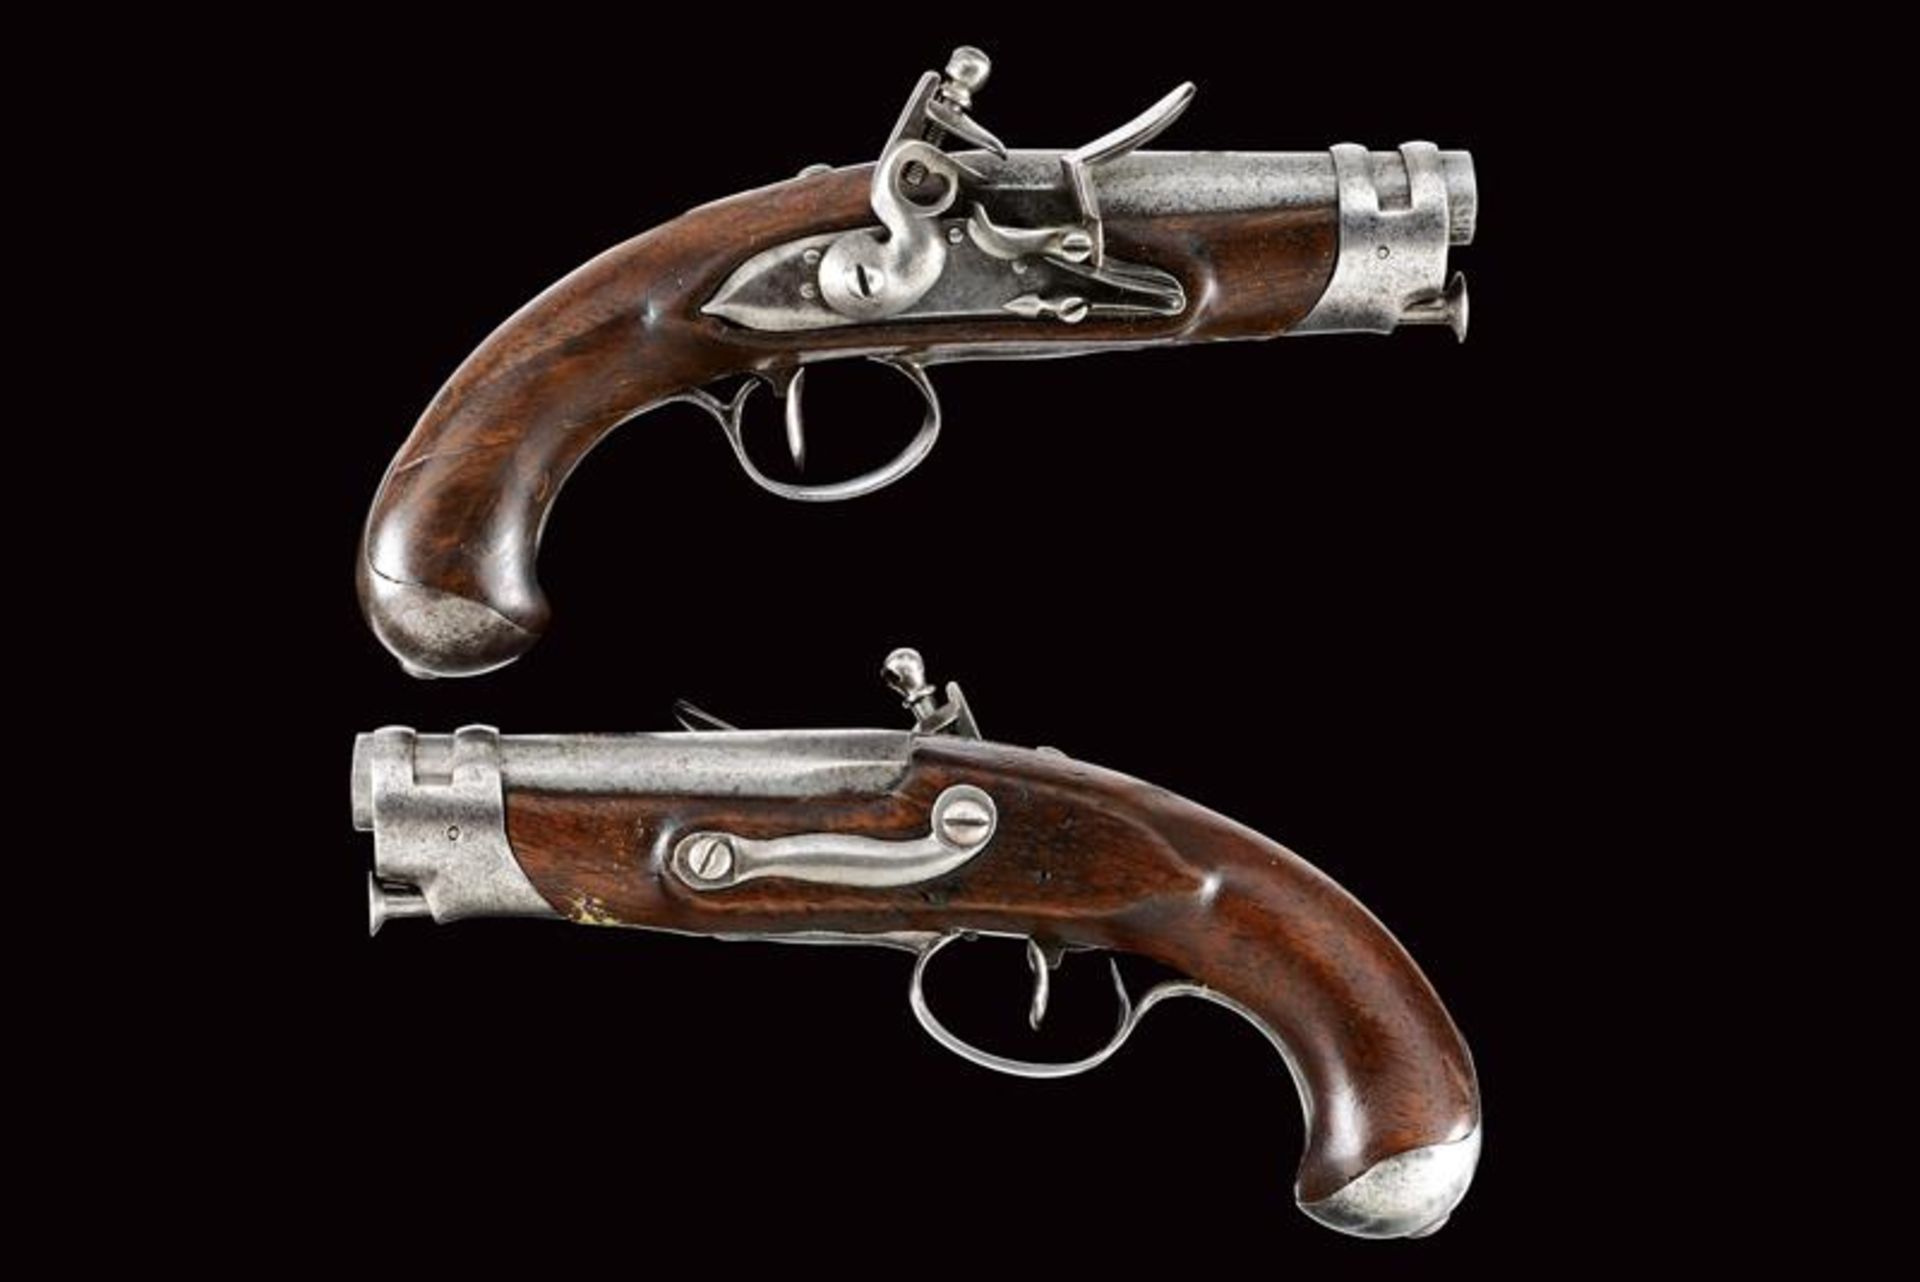 A pair of small flintlock pistols